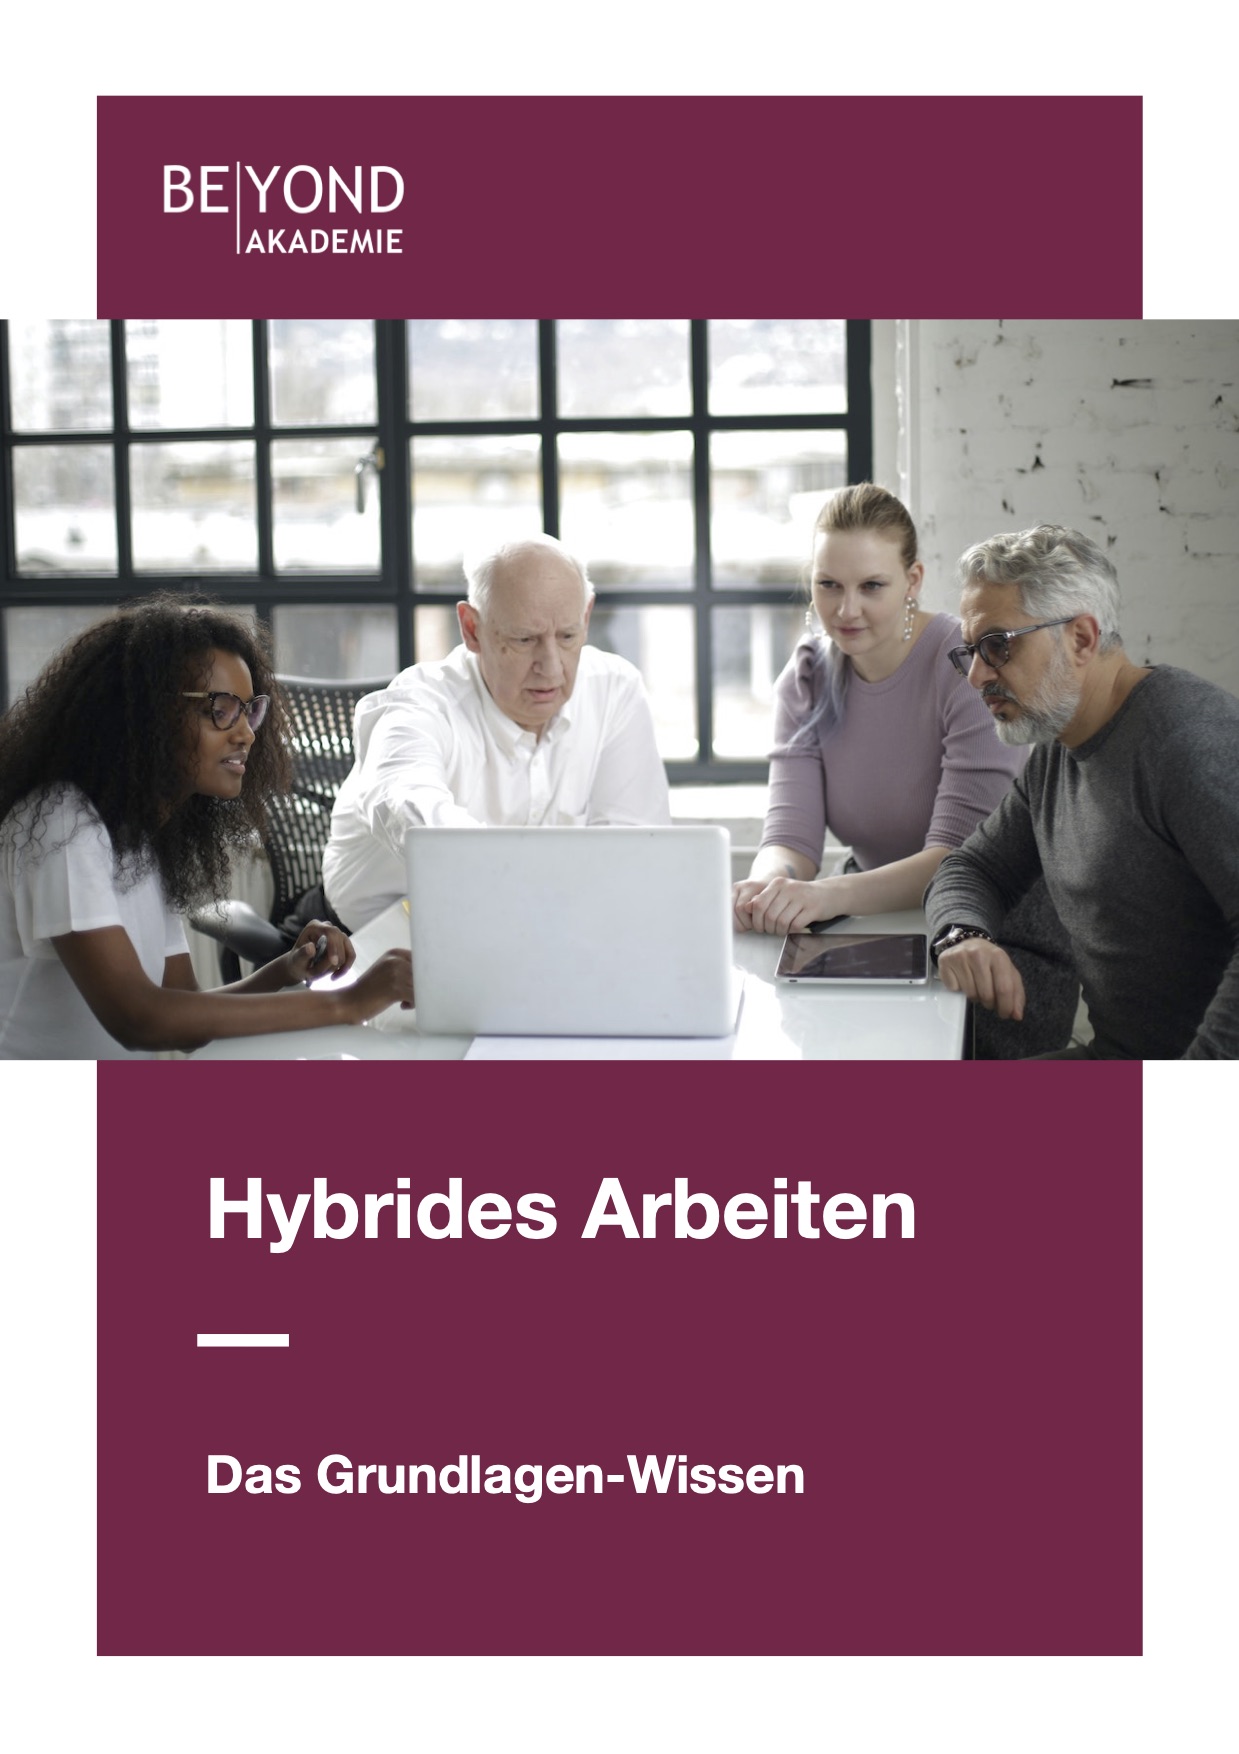 BEYOND Akademie E-BookHybrides-Arbeiten-Das-Grundlagen-Wissen.jpg